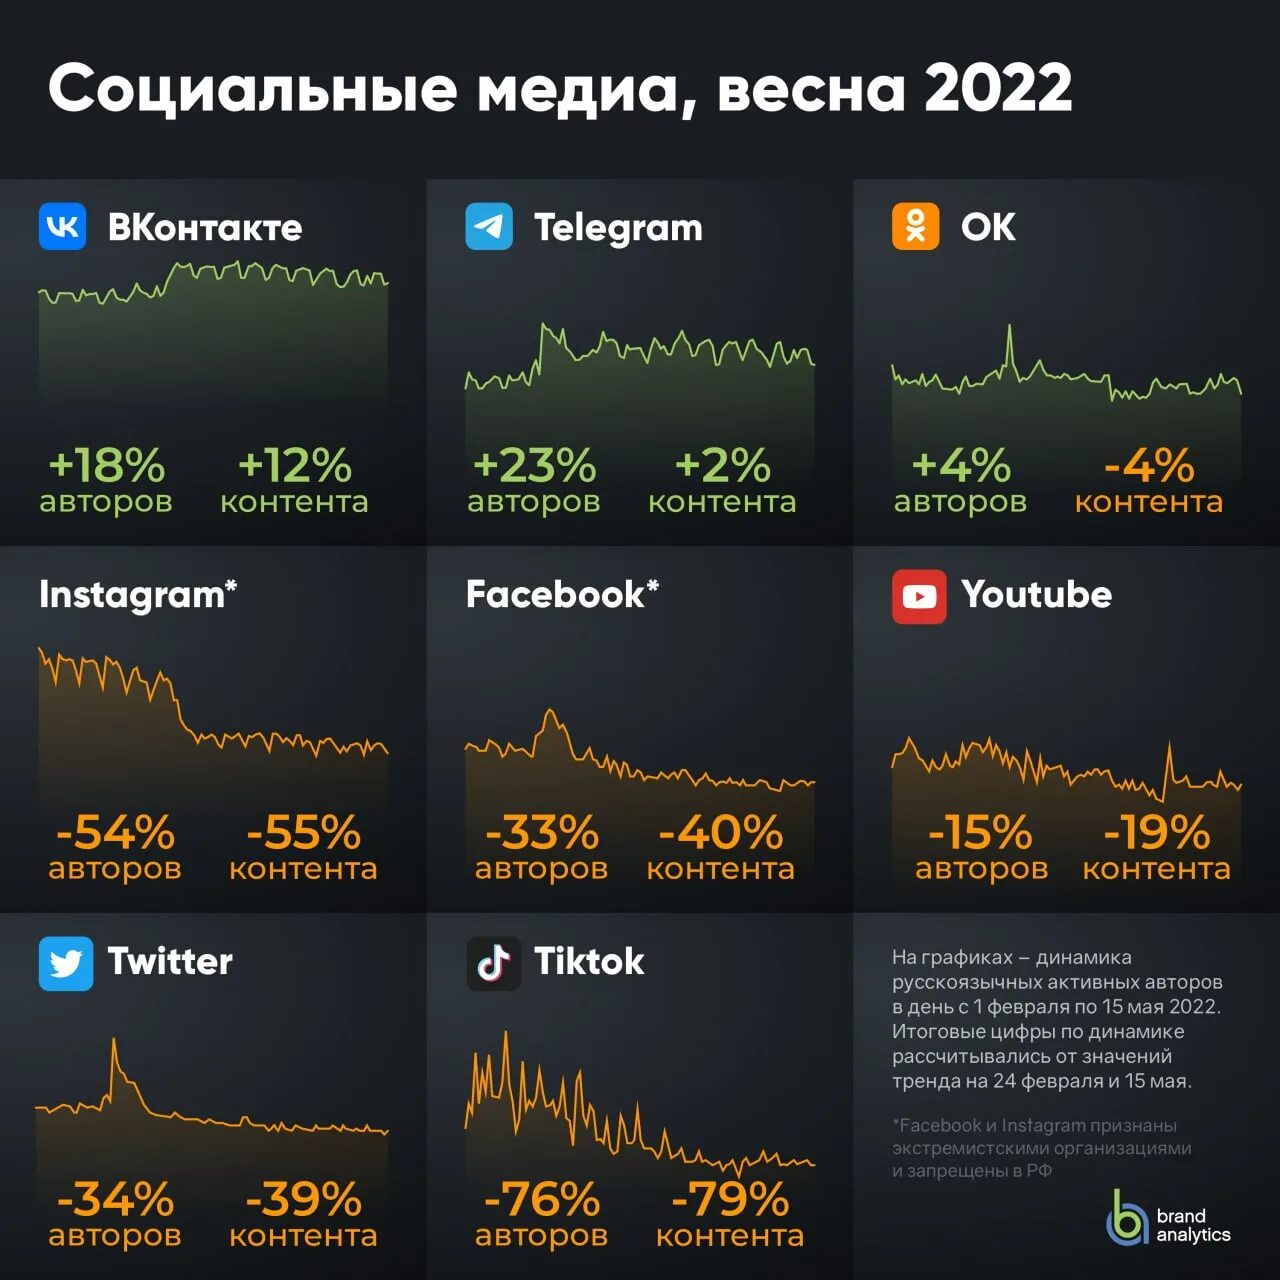 55 content. Рост аудитории телеграмма 2022. Соцсети блокировка. Аналитика социальных сетей. Социальные Медиа.